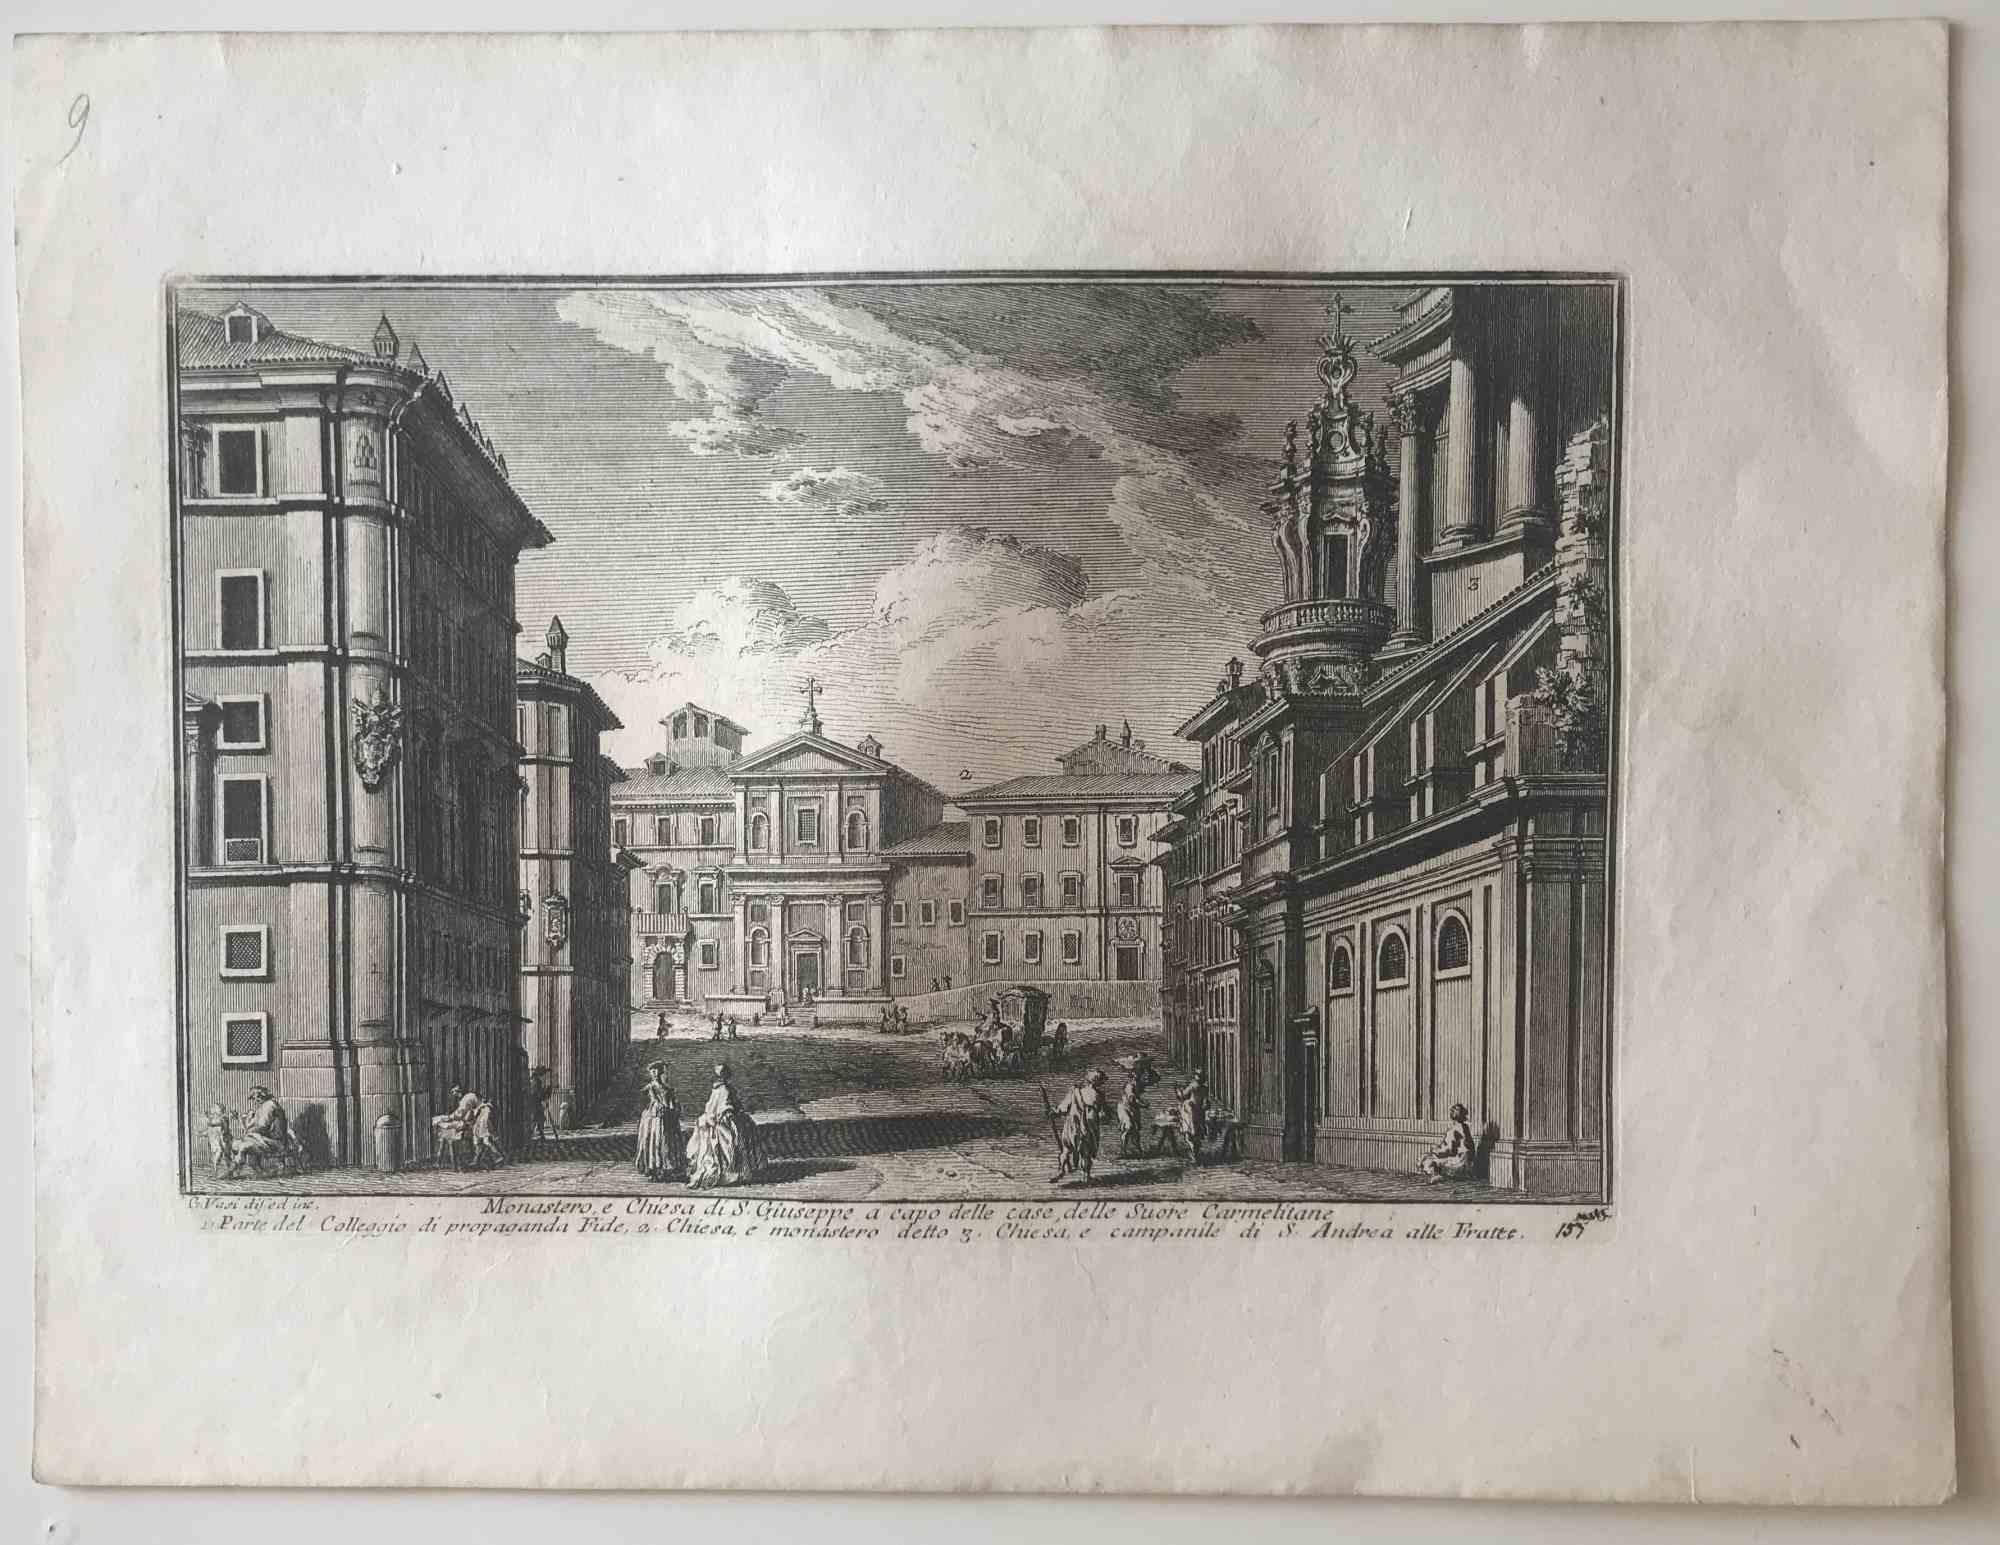 Monastero e Chiesa di S.Giuseppe - Etching by G. Vasi - 18th century